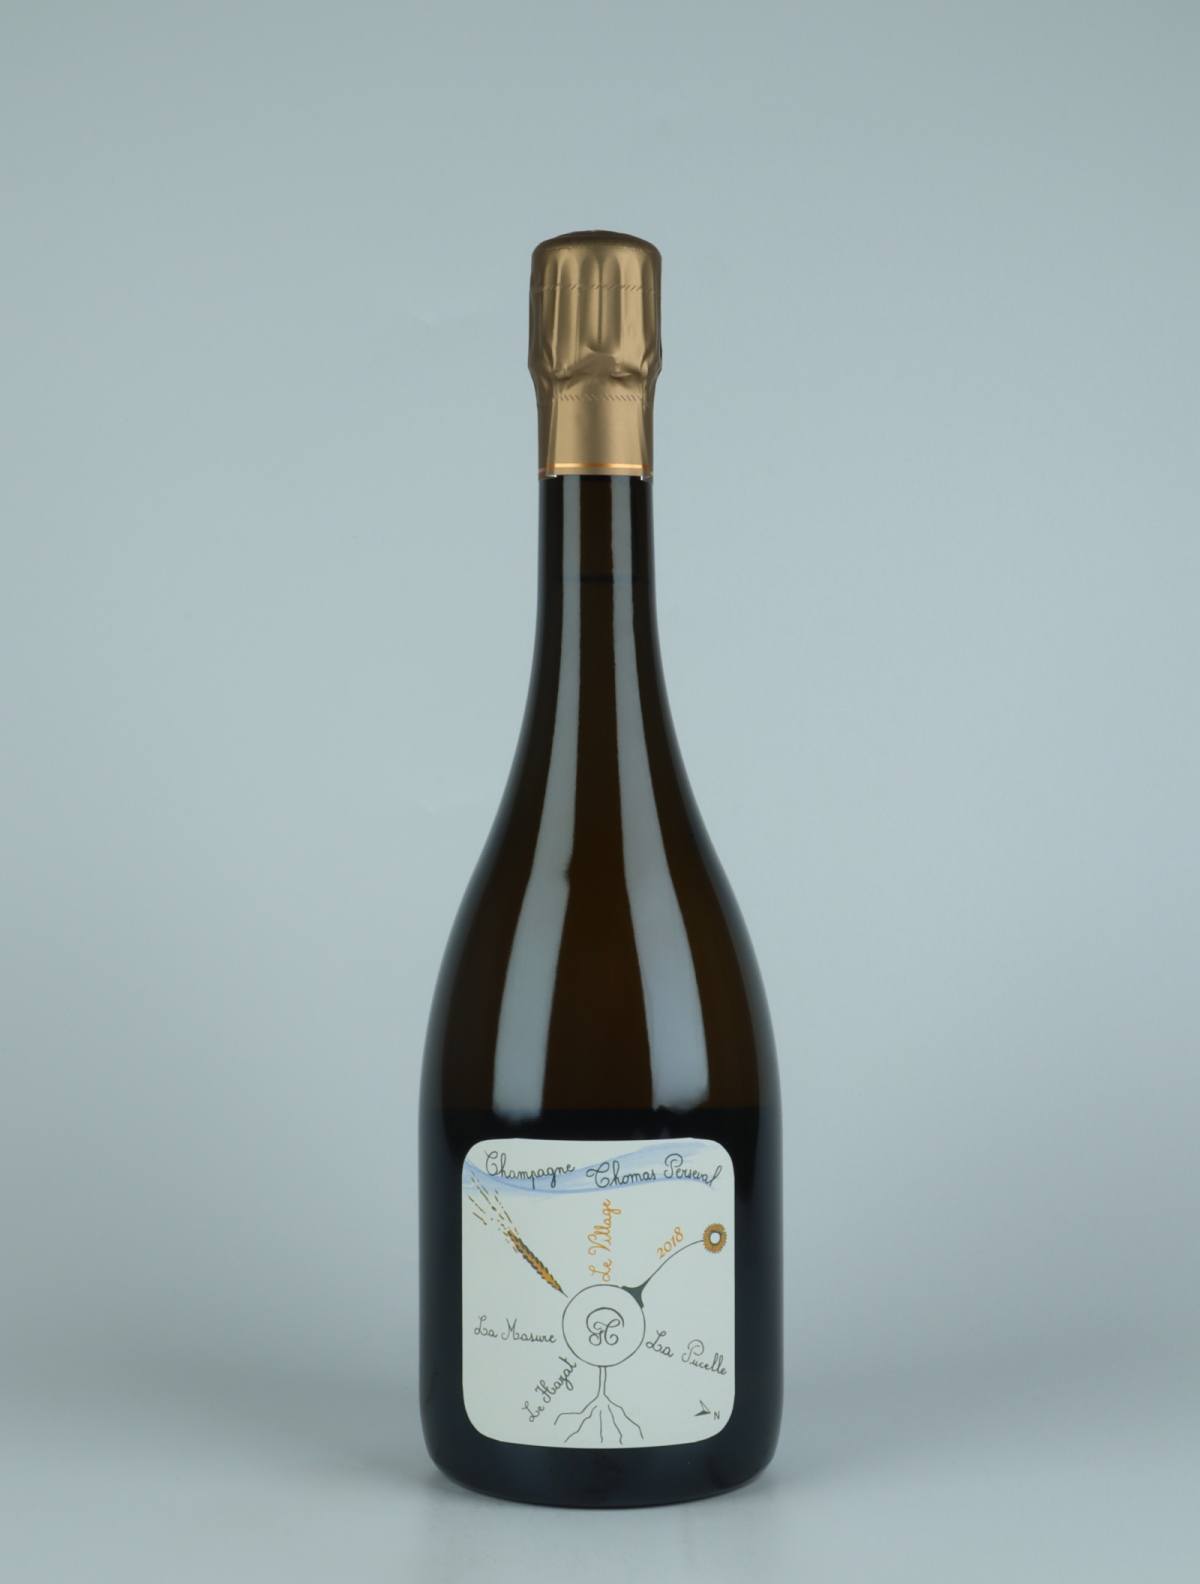 En flaske 2018 Chamery 1. Cru - Le Village Mousserende fra Thomas Perseval, Champagne i Frankrig